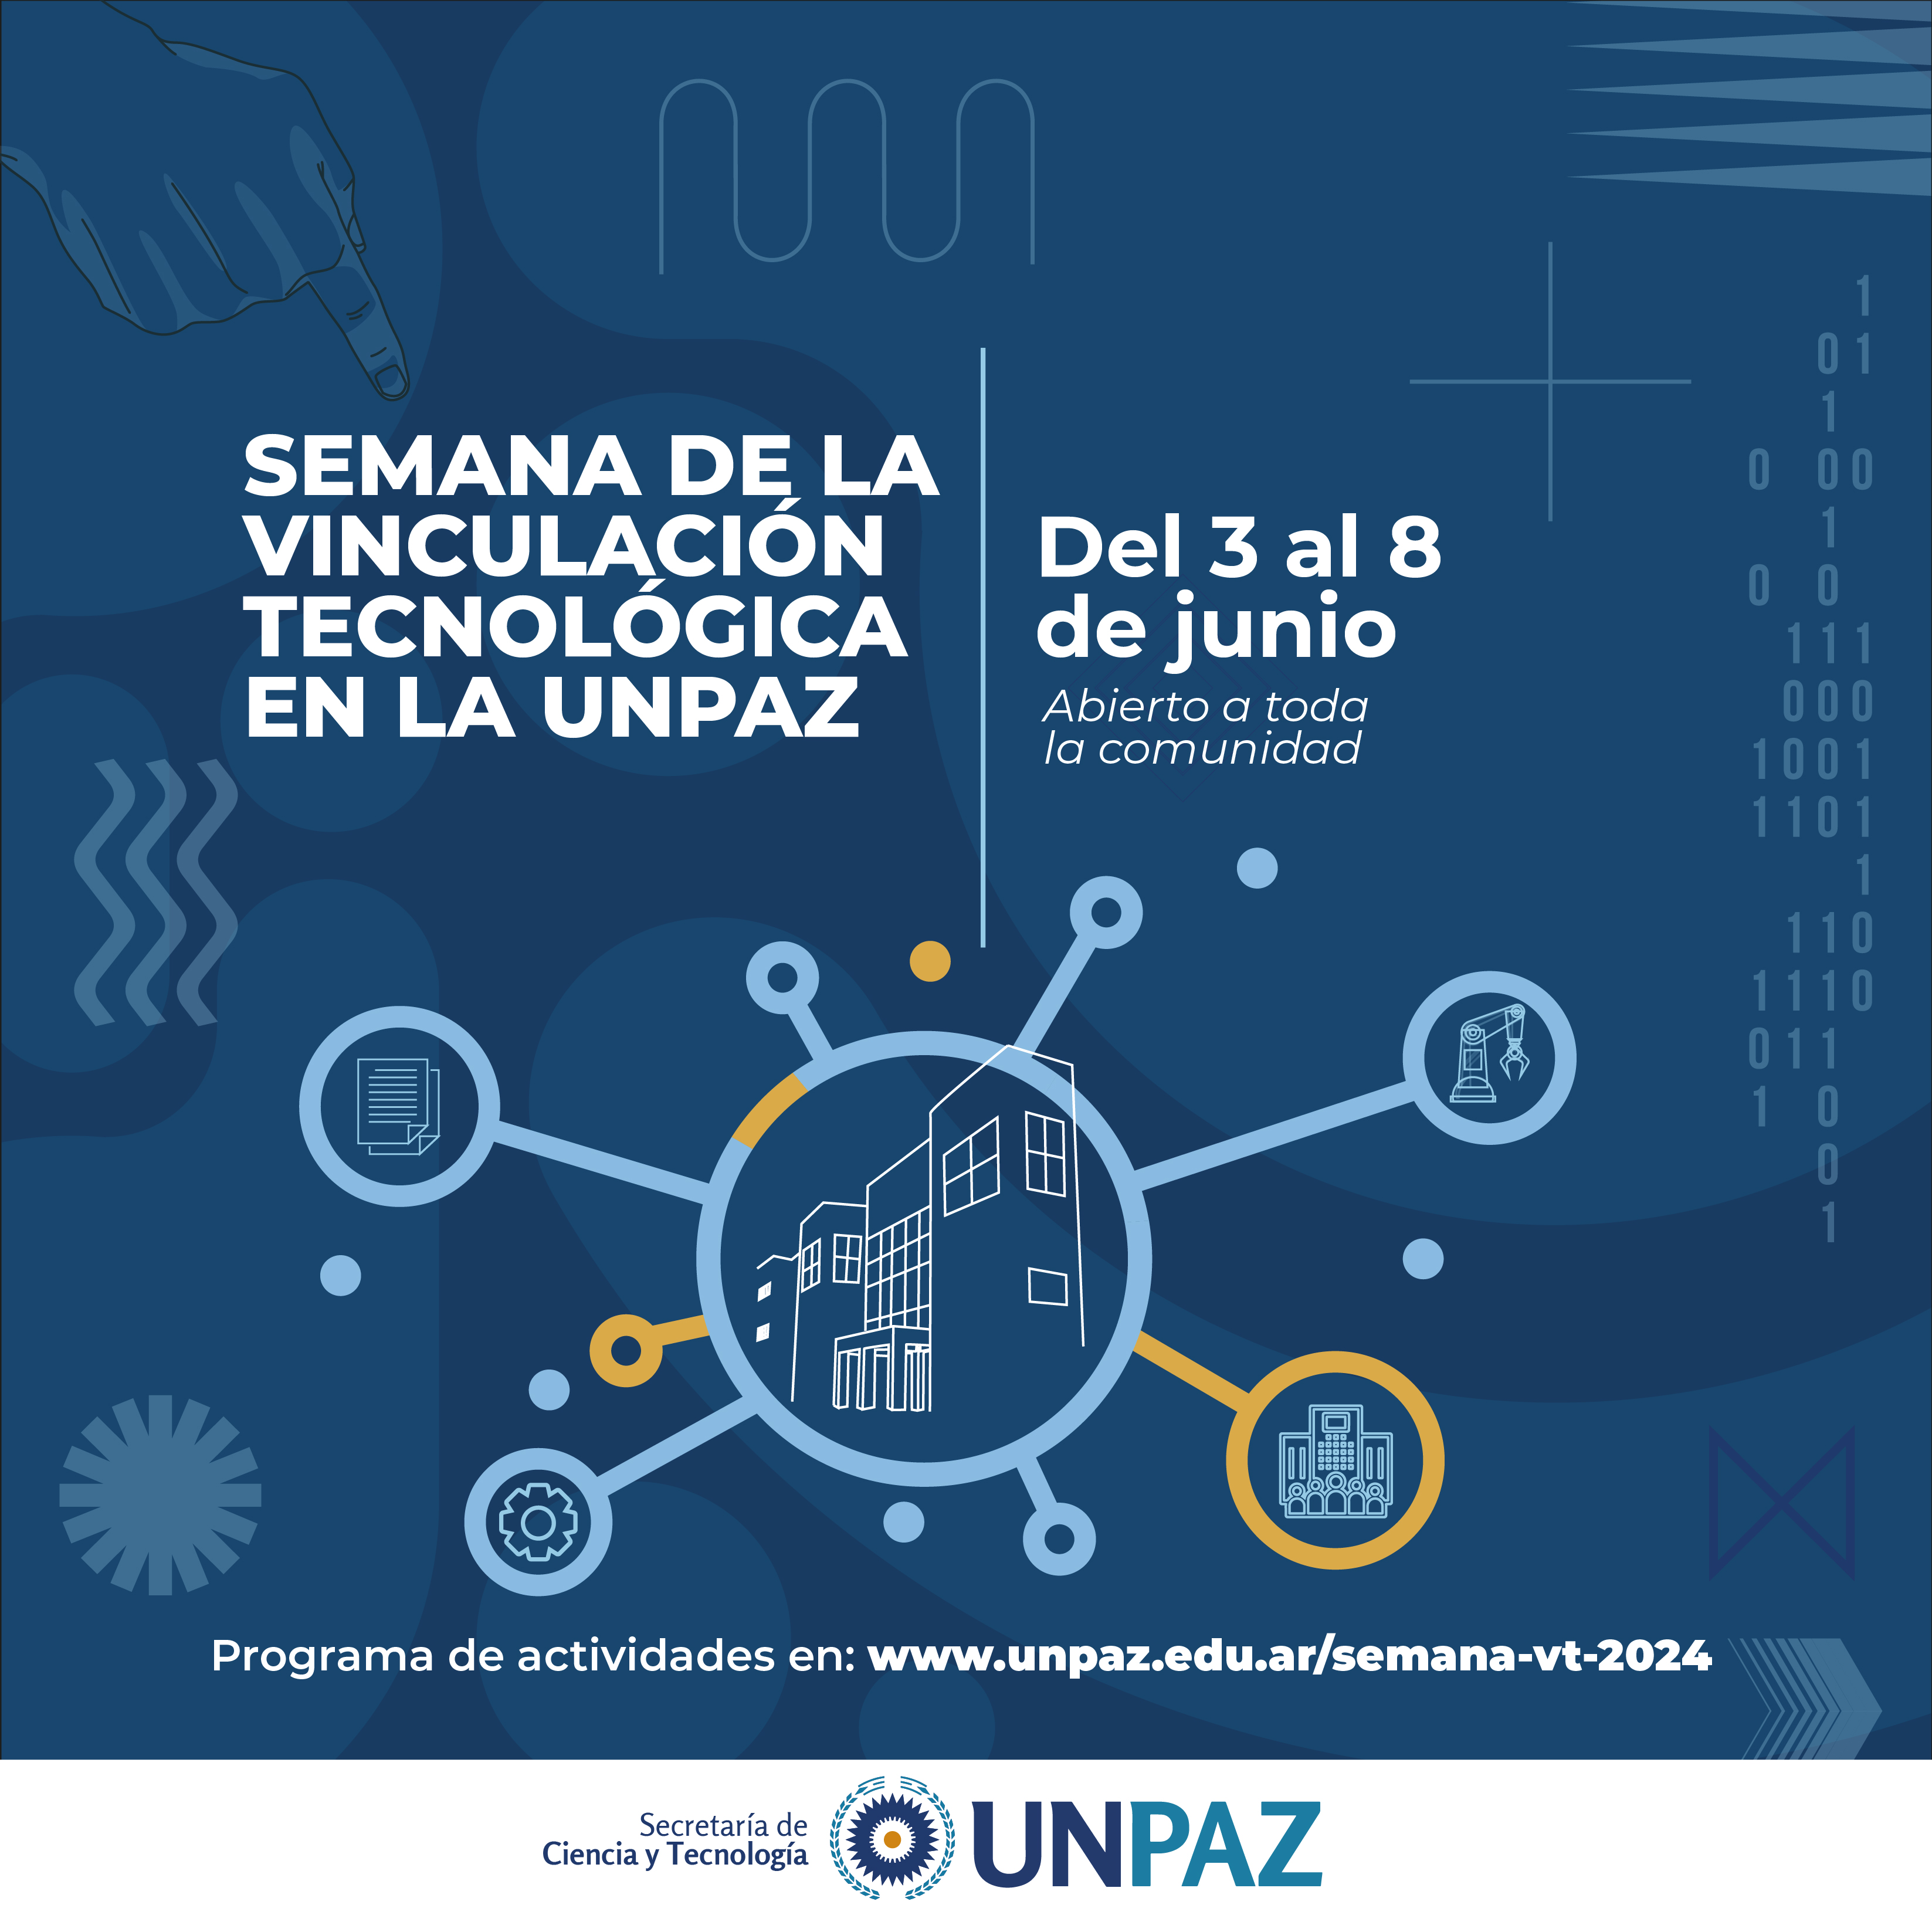 SEMANA DE LA VINCULACIÓN TECNOLÓGICA 2024 EN LA UNPAZ